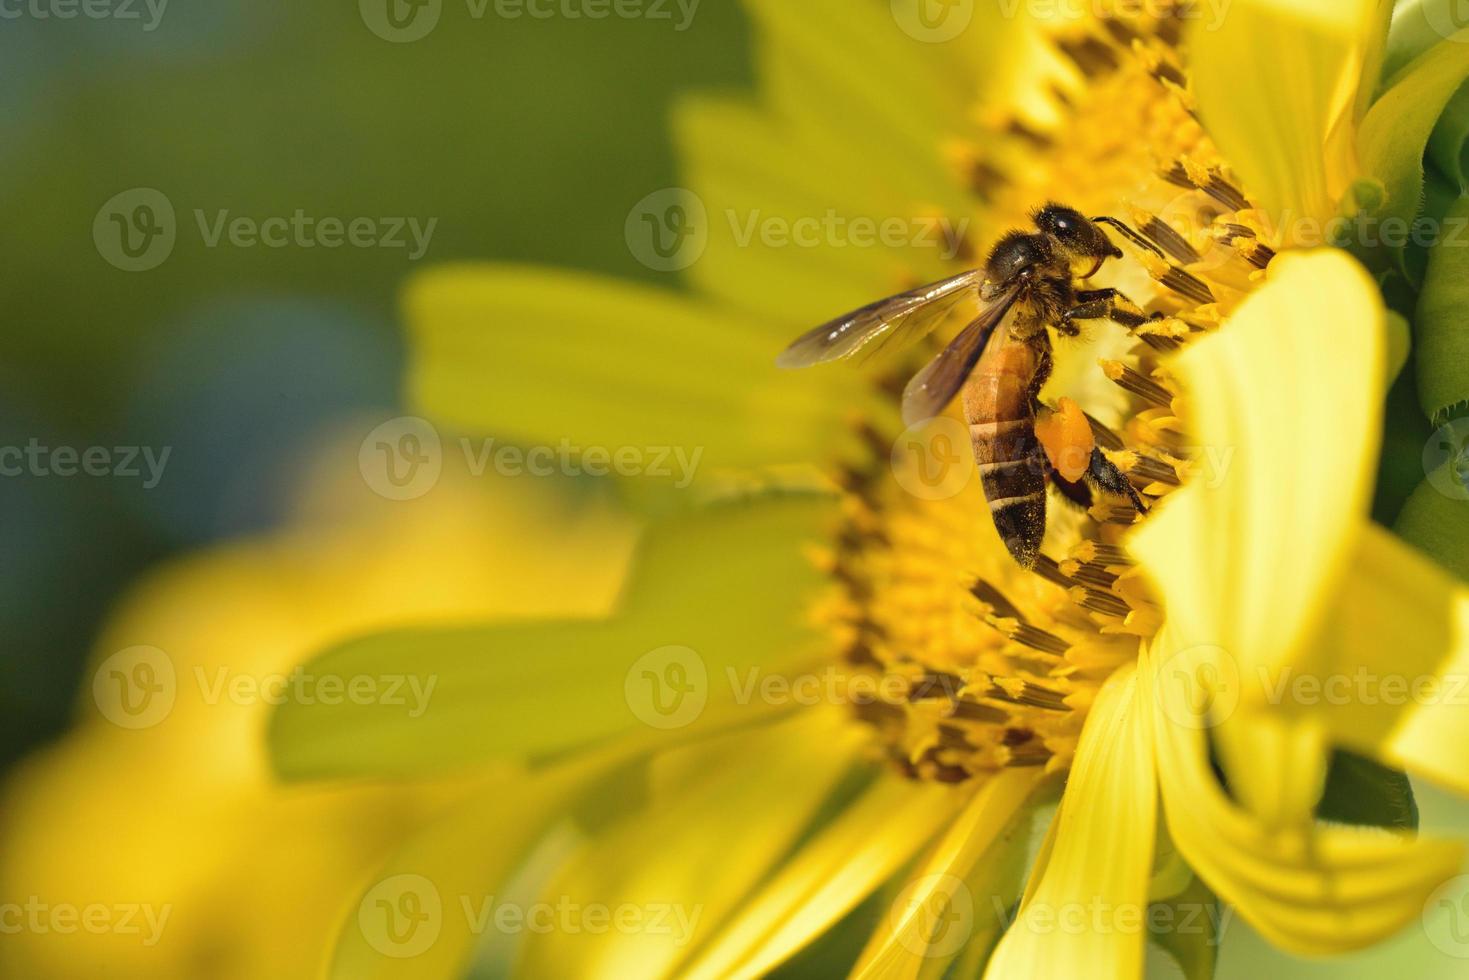 ett bi uppflugen på den vackra blomman foto